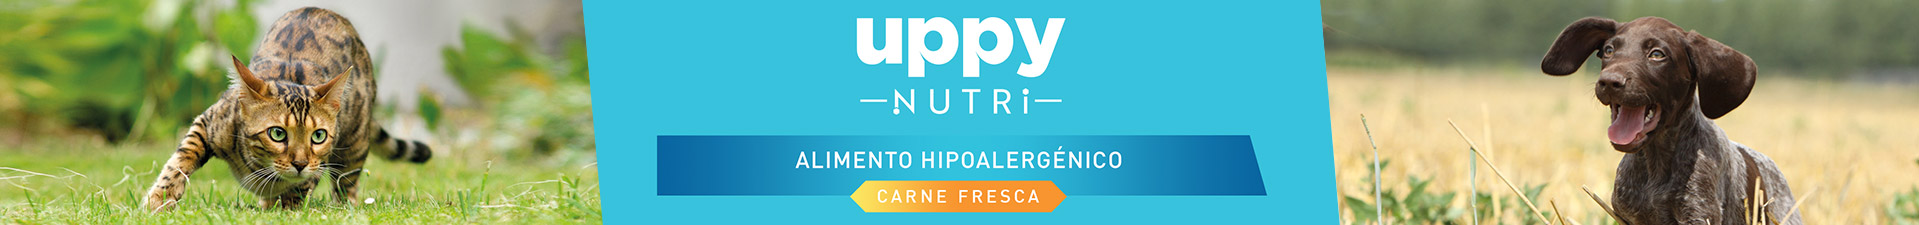 Uppy Nutri